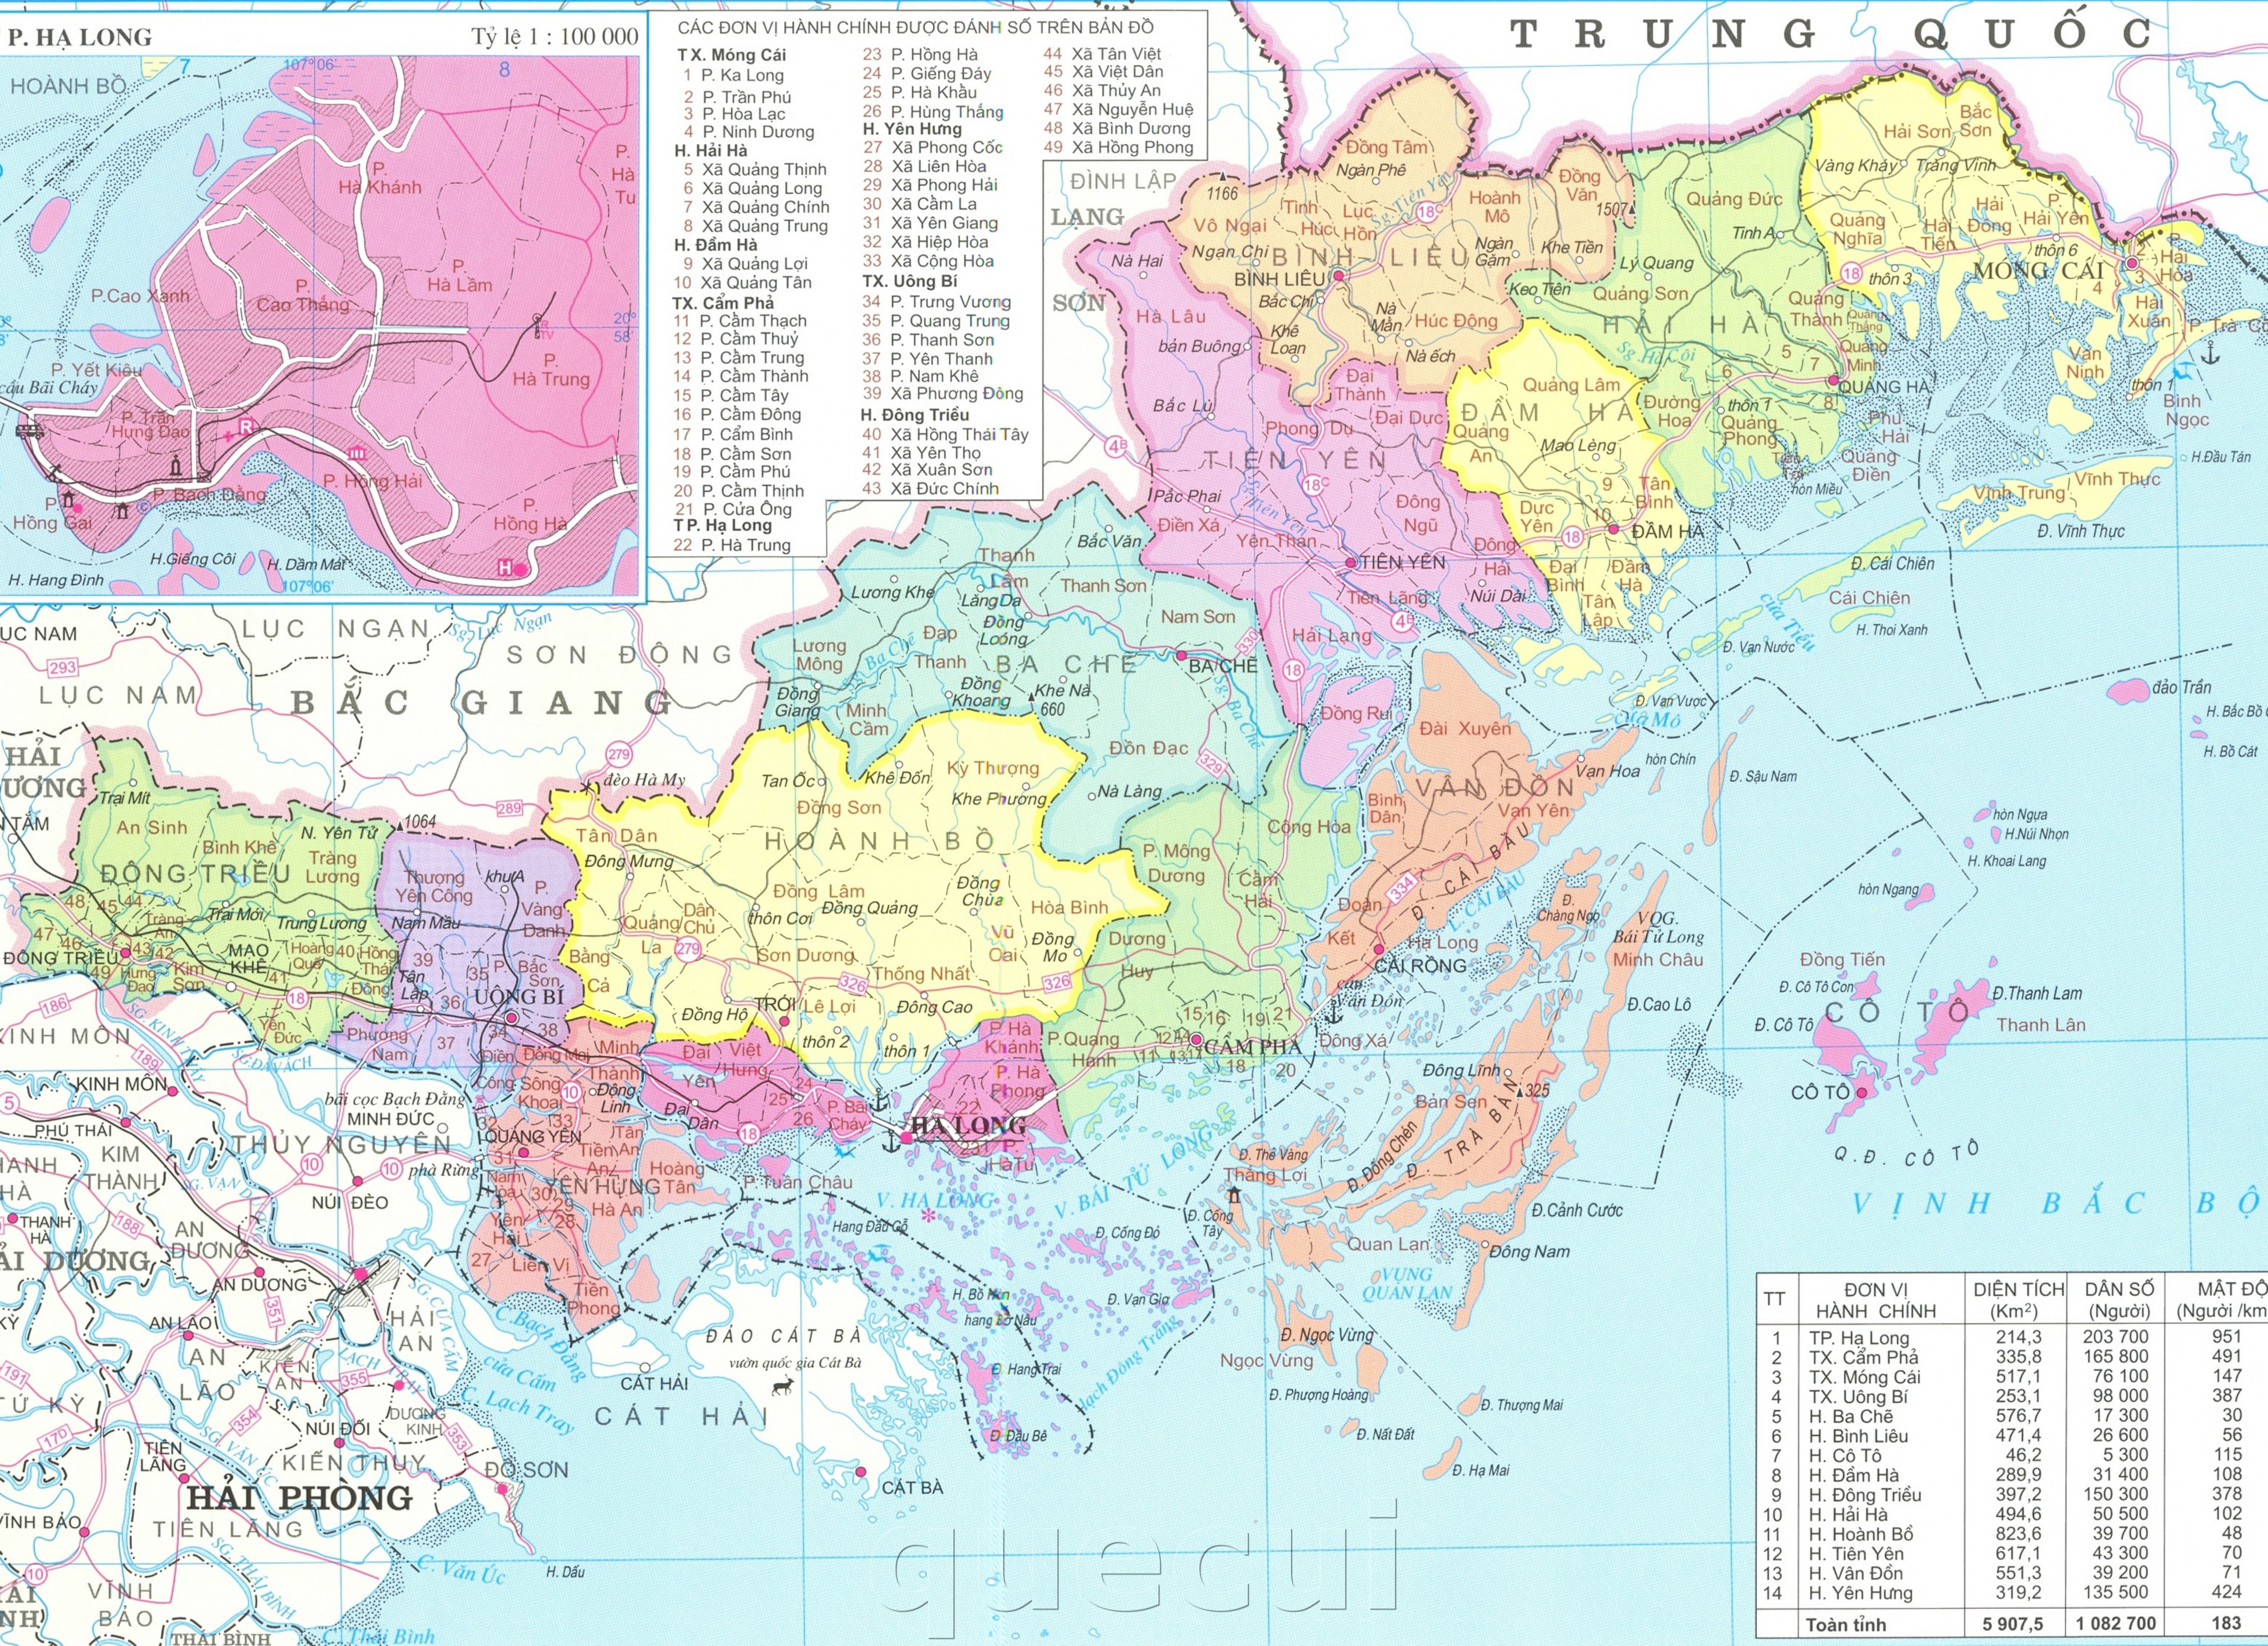 Bản đồ hành chính Quảng Ninh 2024:
Quảng Ninh đang trở thành địa phương hấp dẫn nhất khu vực phía Bắc. Với bản đồ hành chính Quảng Ninh 2024, bạn sẽ có cơ hội khám phá những điểm đến độc đáo như Vịnh Hạ Long, Cửa Lục... Đặc biệt, bản đồ này còn cập nhật những thông tin mới nhất về các dự án phát triển kinh tế - xã hội của tỉnh.